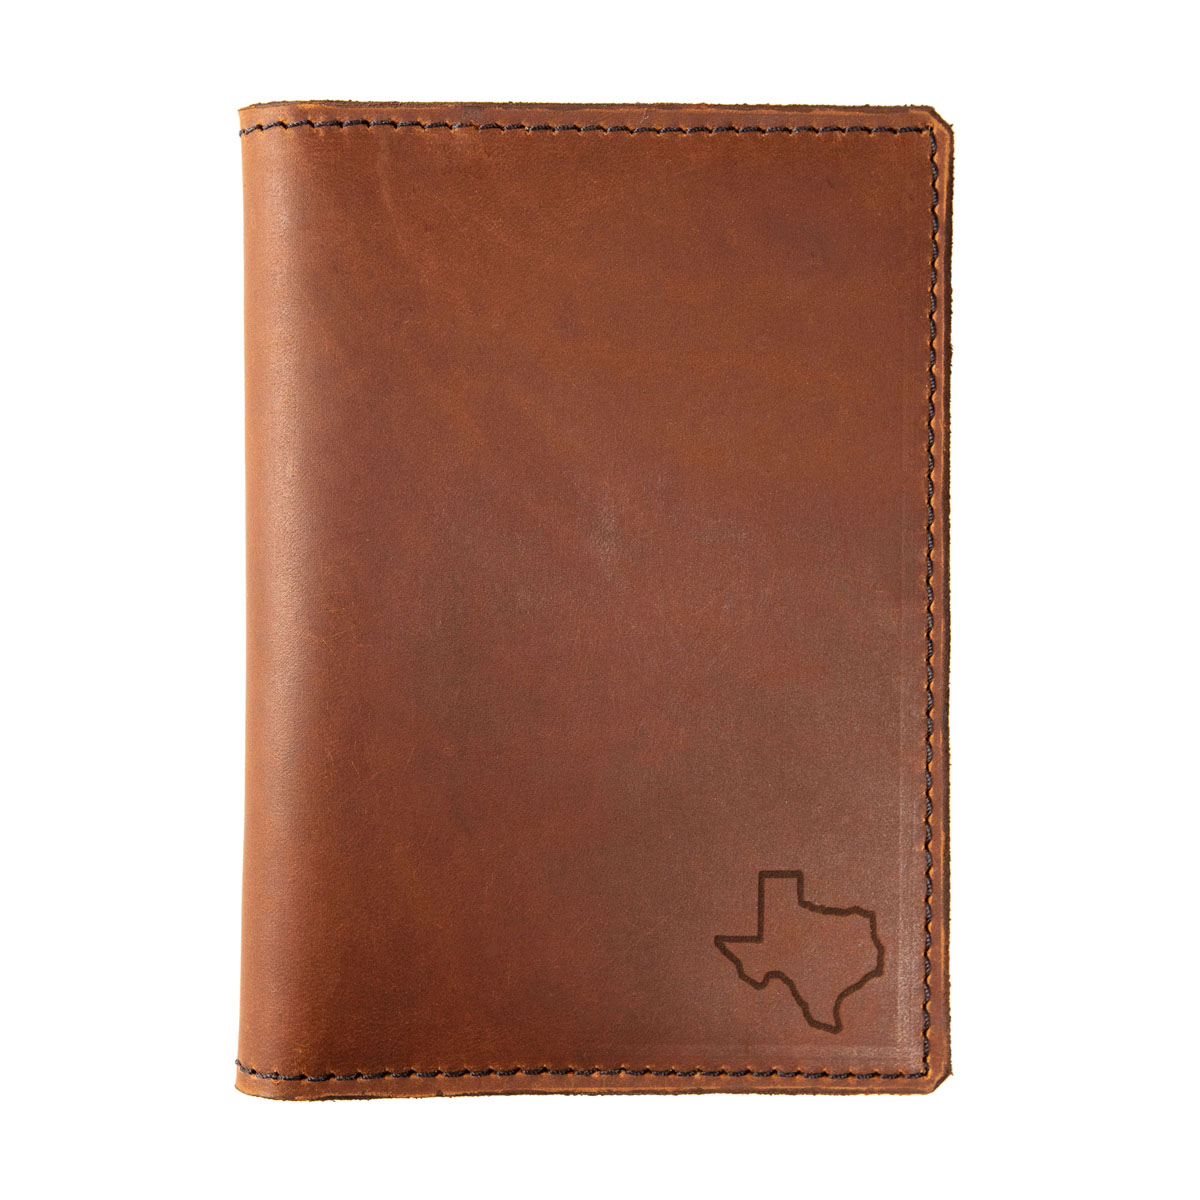 Leather Passport Holder, Medium Brown